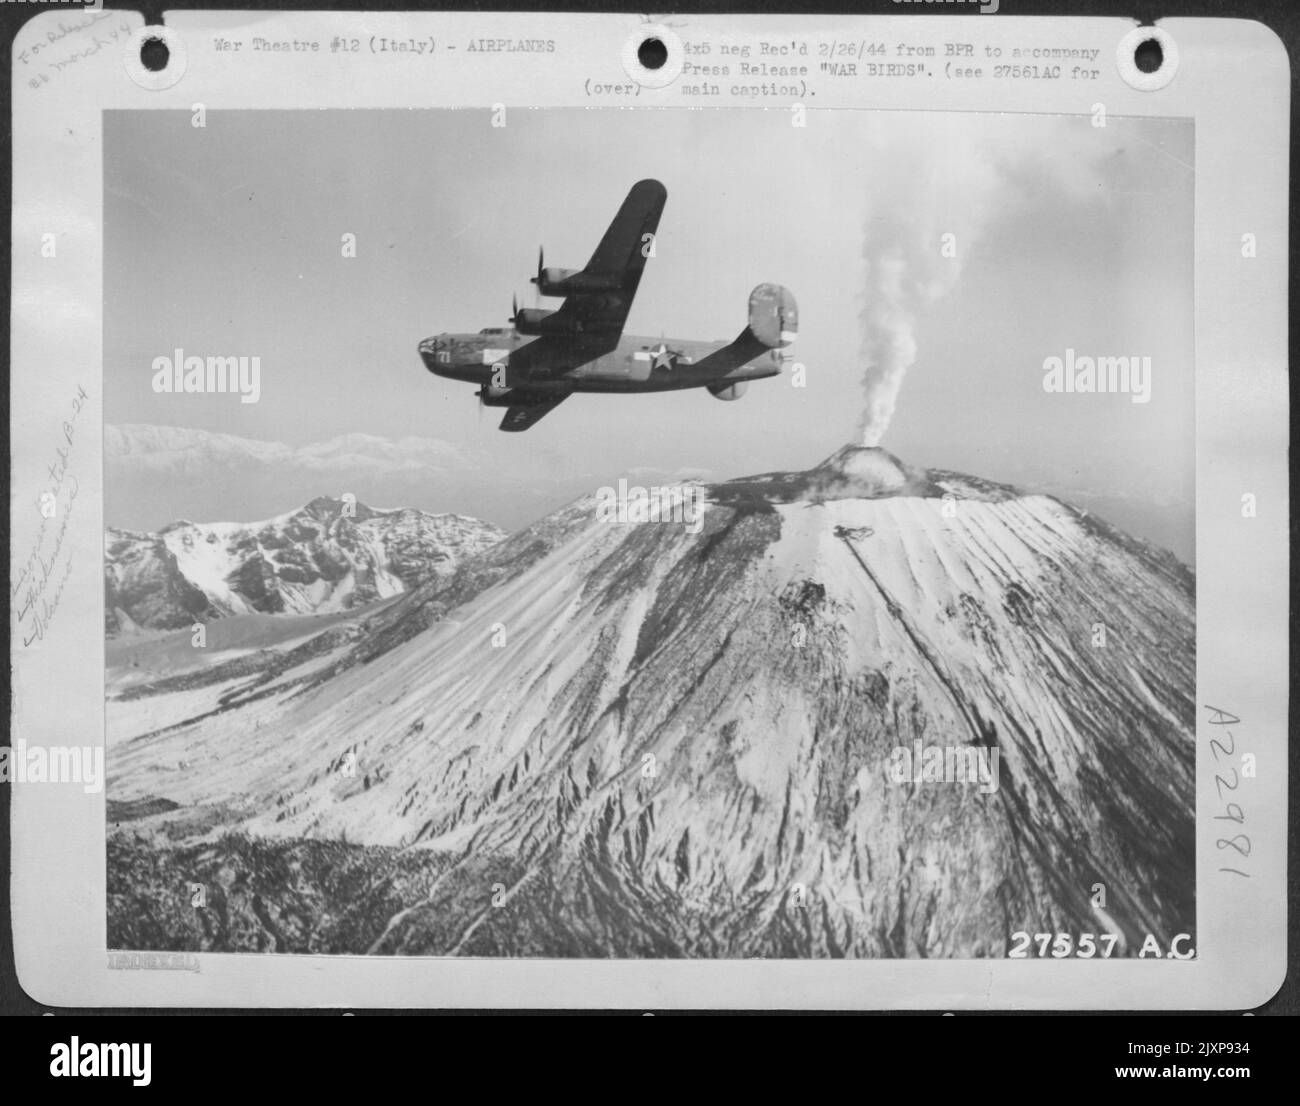 Le piste innevate del Monte Il Vesuvio qui forma un cono craterato per il fumo vulcanico e il vapore che si innalza pigriosamente verso l'alto come un bombardiere del liberatore B-24 delle forze aeree dell'esercito degli Stati Uniti cerchi sopra--così riunendo uno della natura più vecchia e dell'uomo Foto Stock